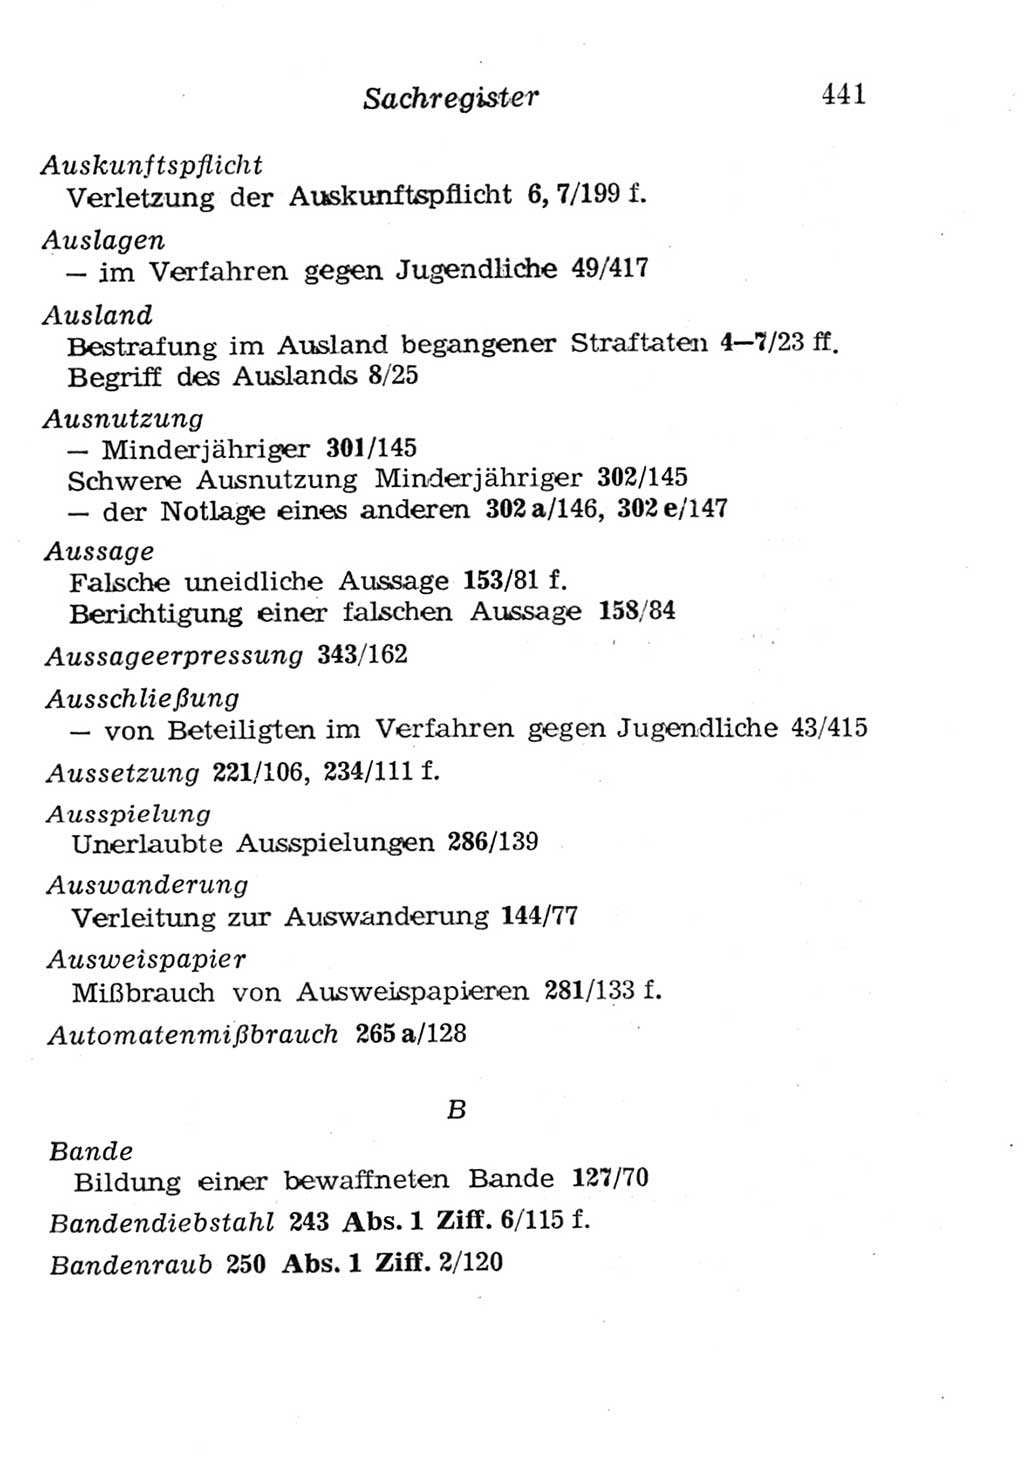 Strafgesetzbuch (StGB) und andere Strafgesetze [Deutsche Demokratische Republik (DDR)] 1957, Seite 441 (StGB Strafges. DDR 1957, S. 441)